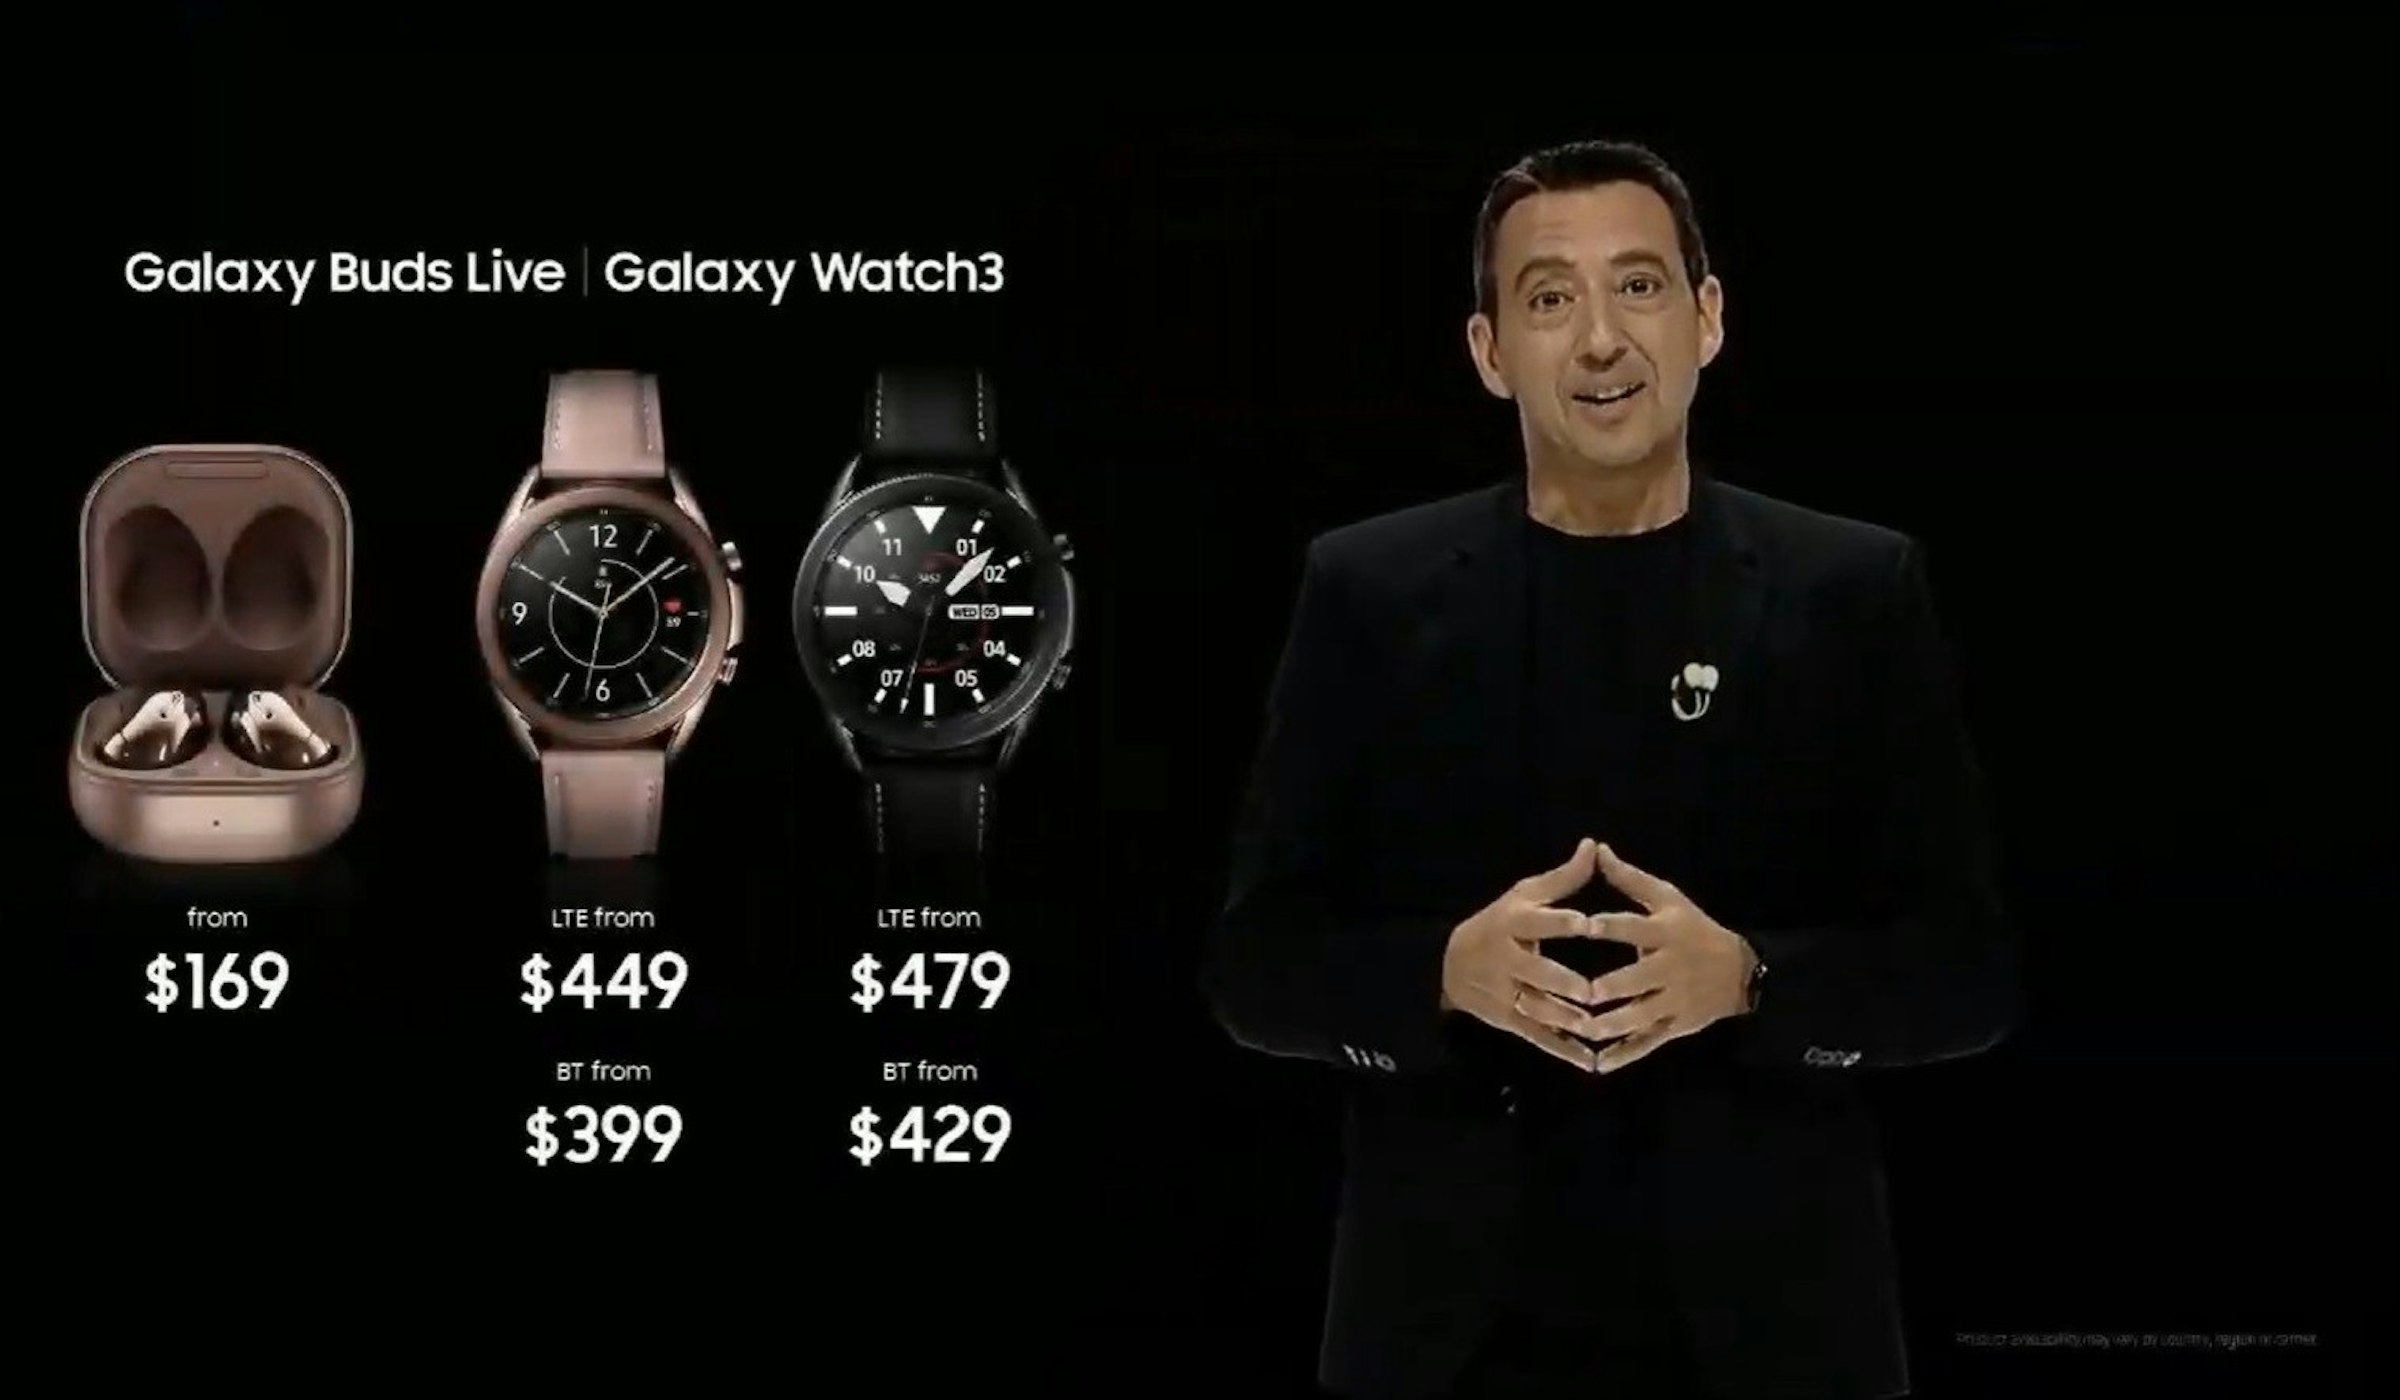 照片中提到了Galaxy Buds Live Galaxy Watch3、12、11，跟1492图片、SAP SE有关，包含了看、产品设计、牌、产品、看